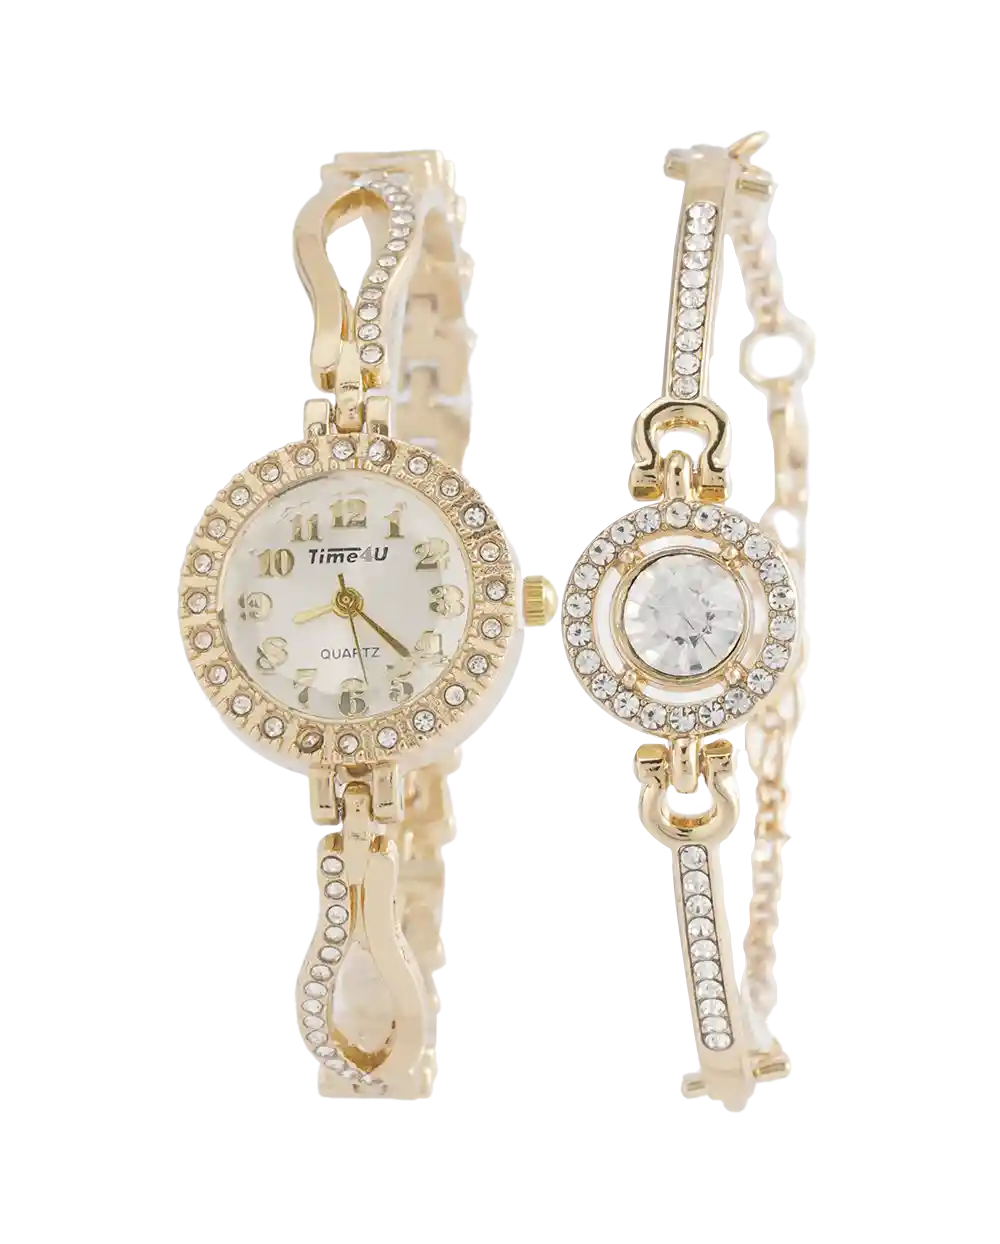 خرید ست ساعت مچی و دستبند زنانه TIME4U مدل 1965 بند استیل و نگین کاری شده با دستبند دخترانه و رنک ثابت بهترین قیمت به همراه ارسال رایگان